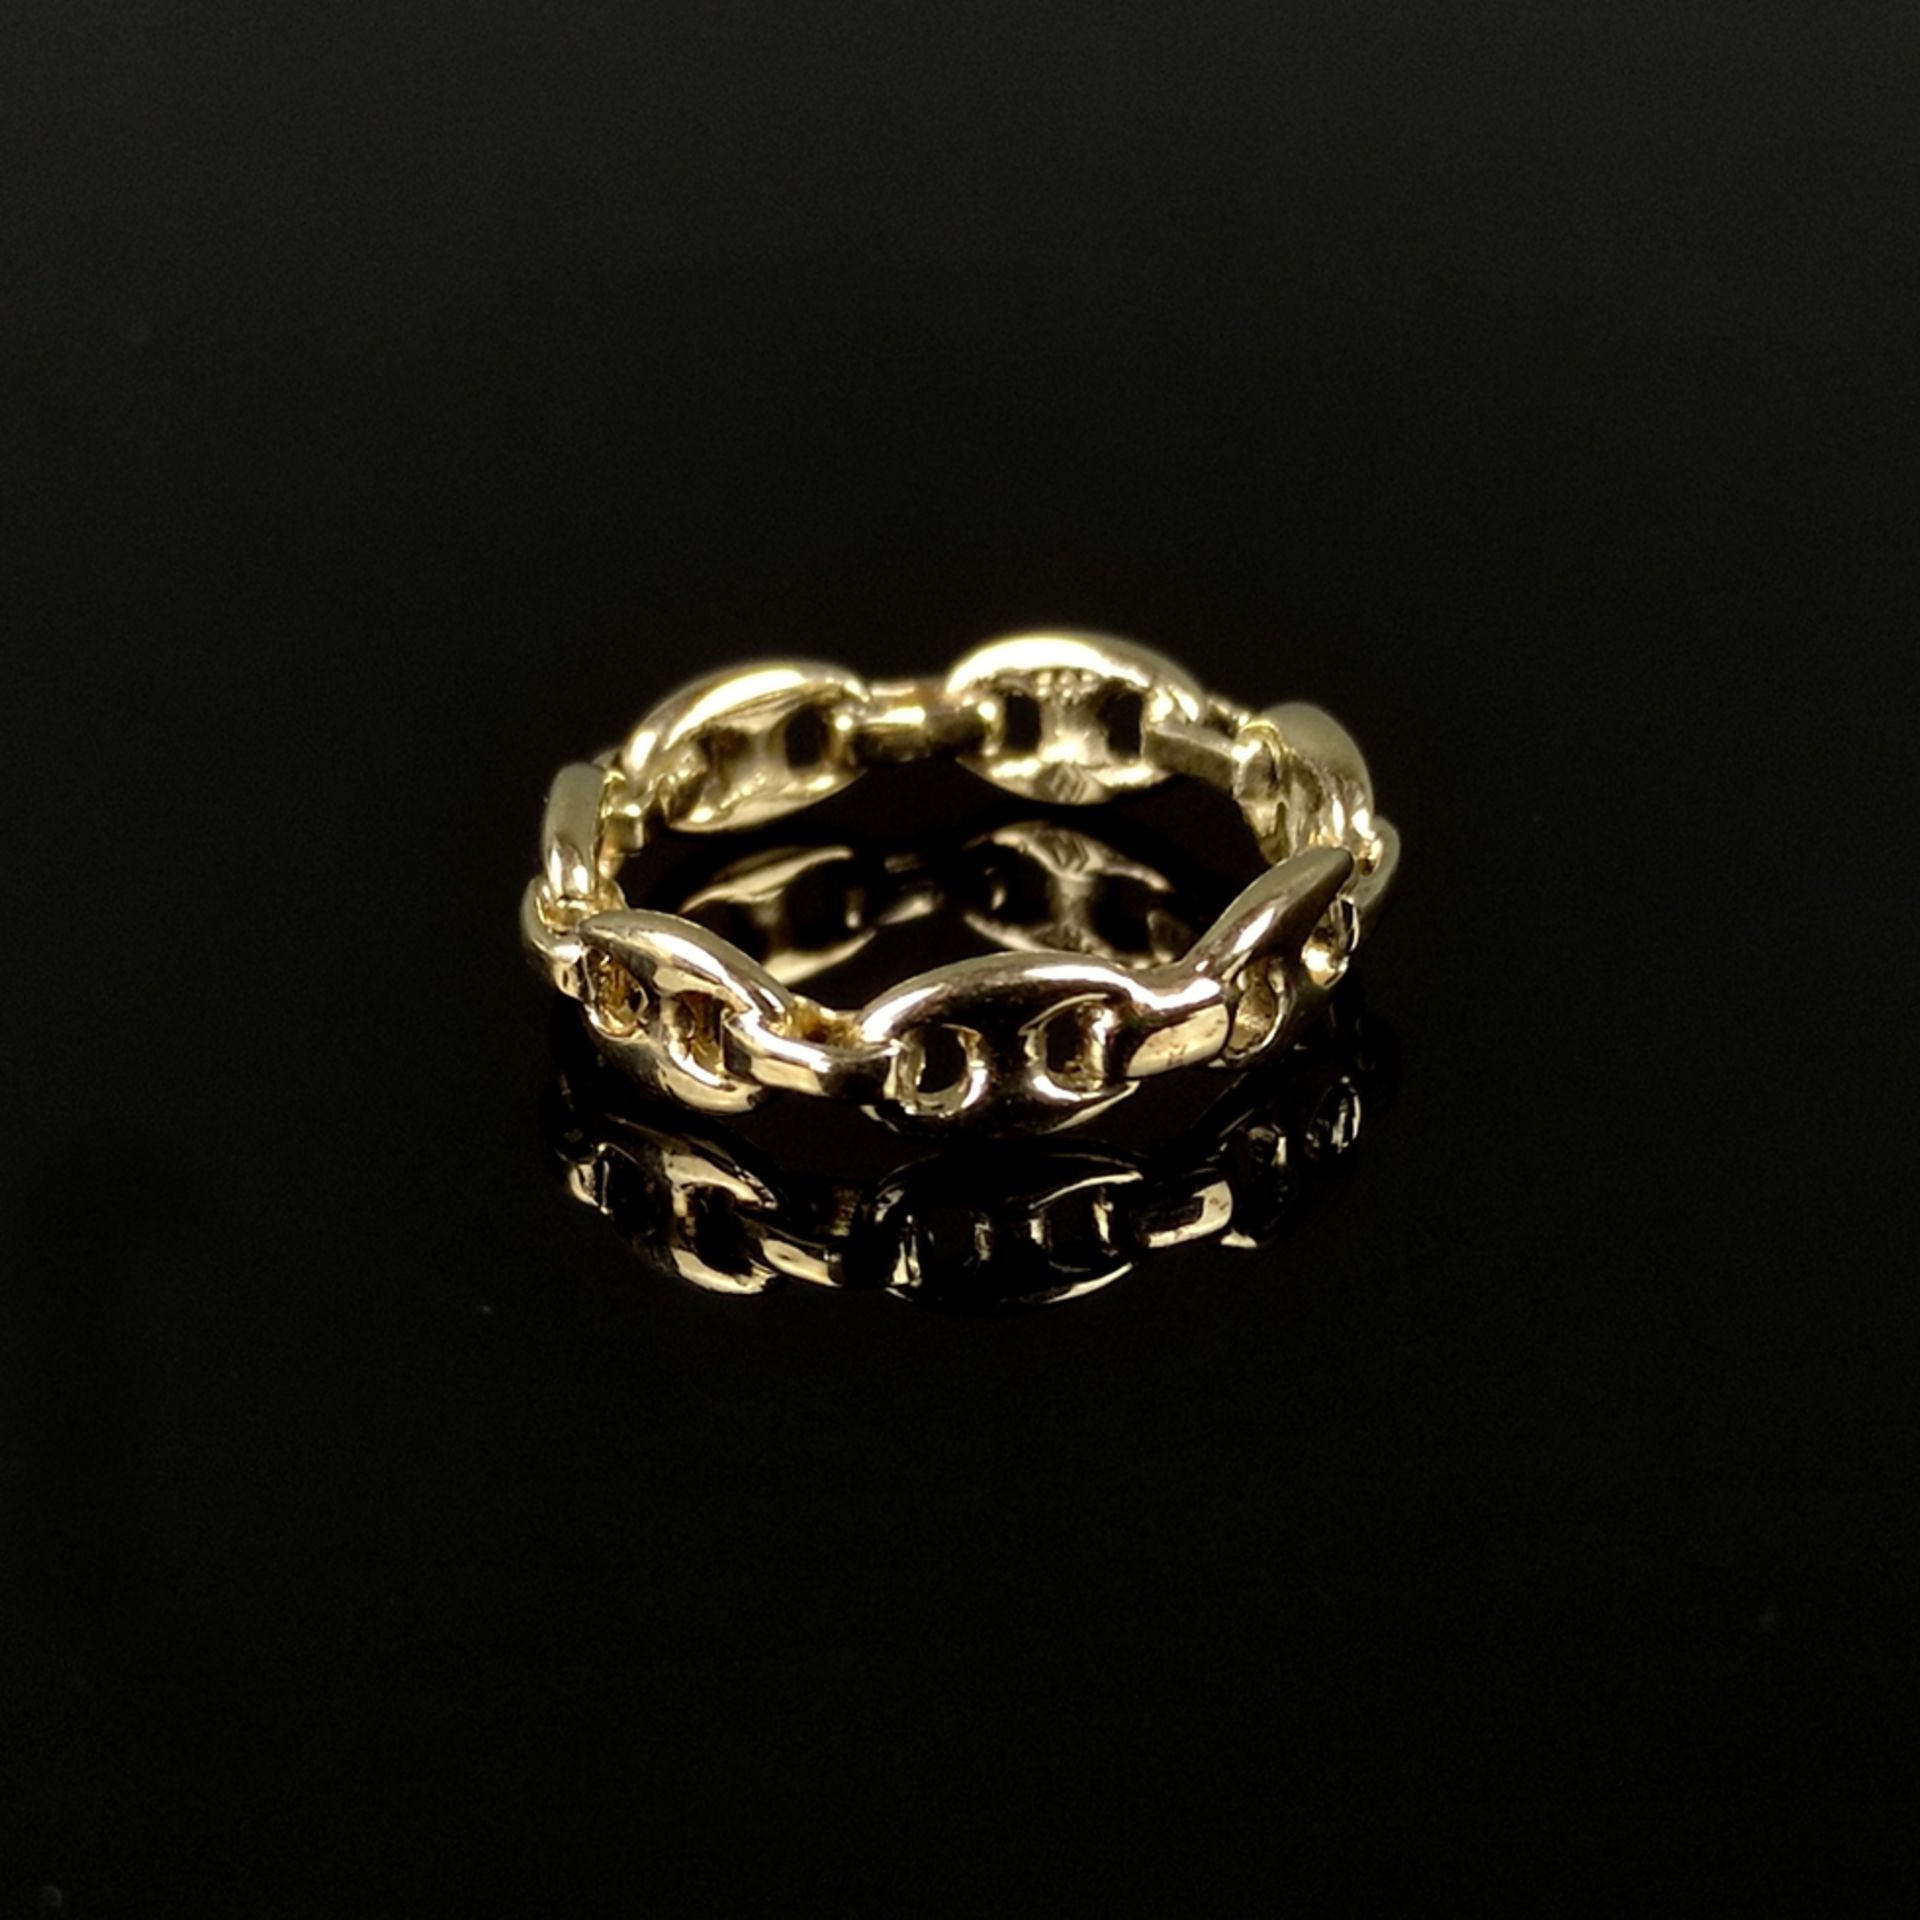 Schiffsanker- Ring, 585/14K Gelbgold (punziert), 3,7g, Ringgröße 54